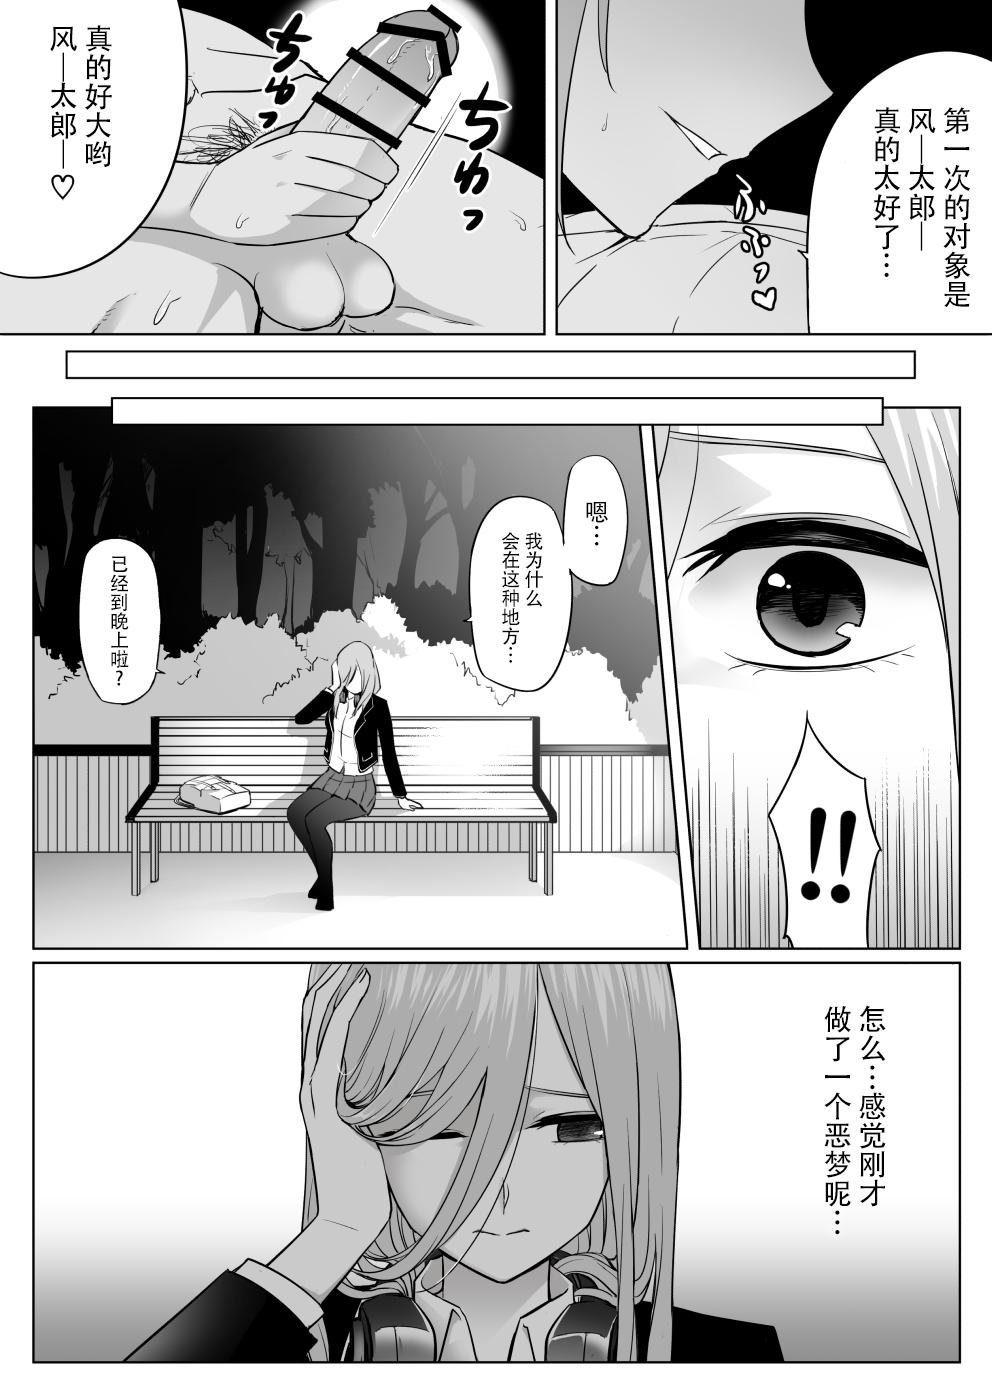 Sucks Nakano ke bijin shimai shojo soushitsu - Gotoubun no hanayome | the quintessential quintuplets Hotel - Page 31